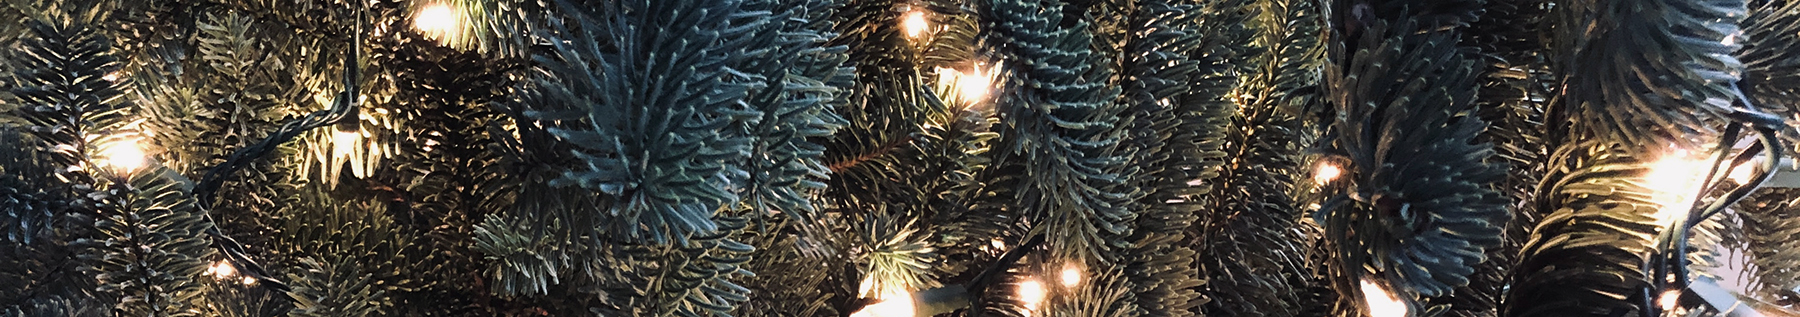 lights on a tree